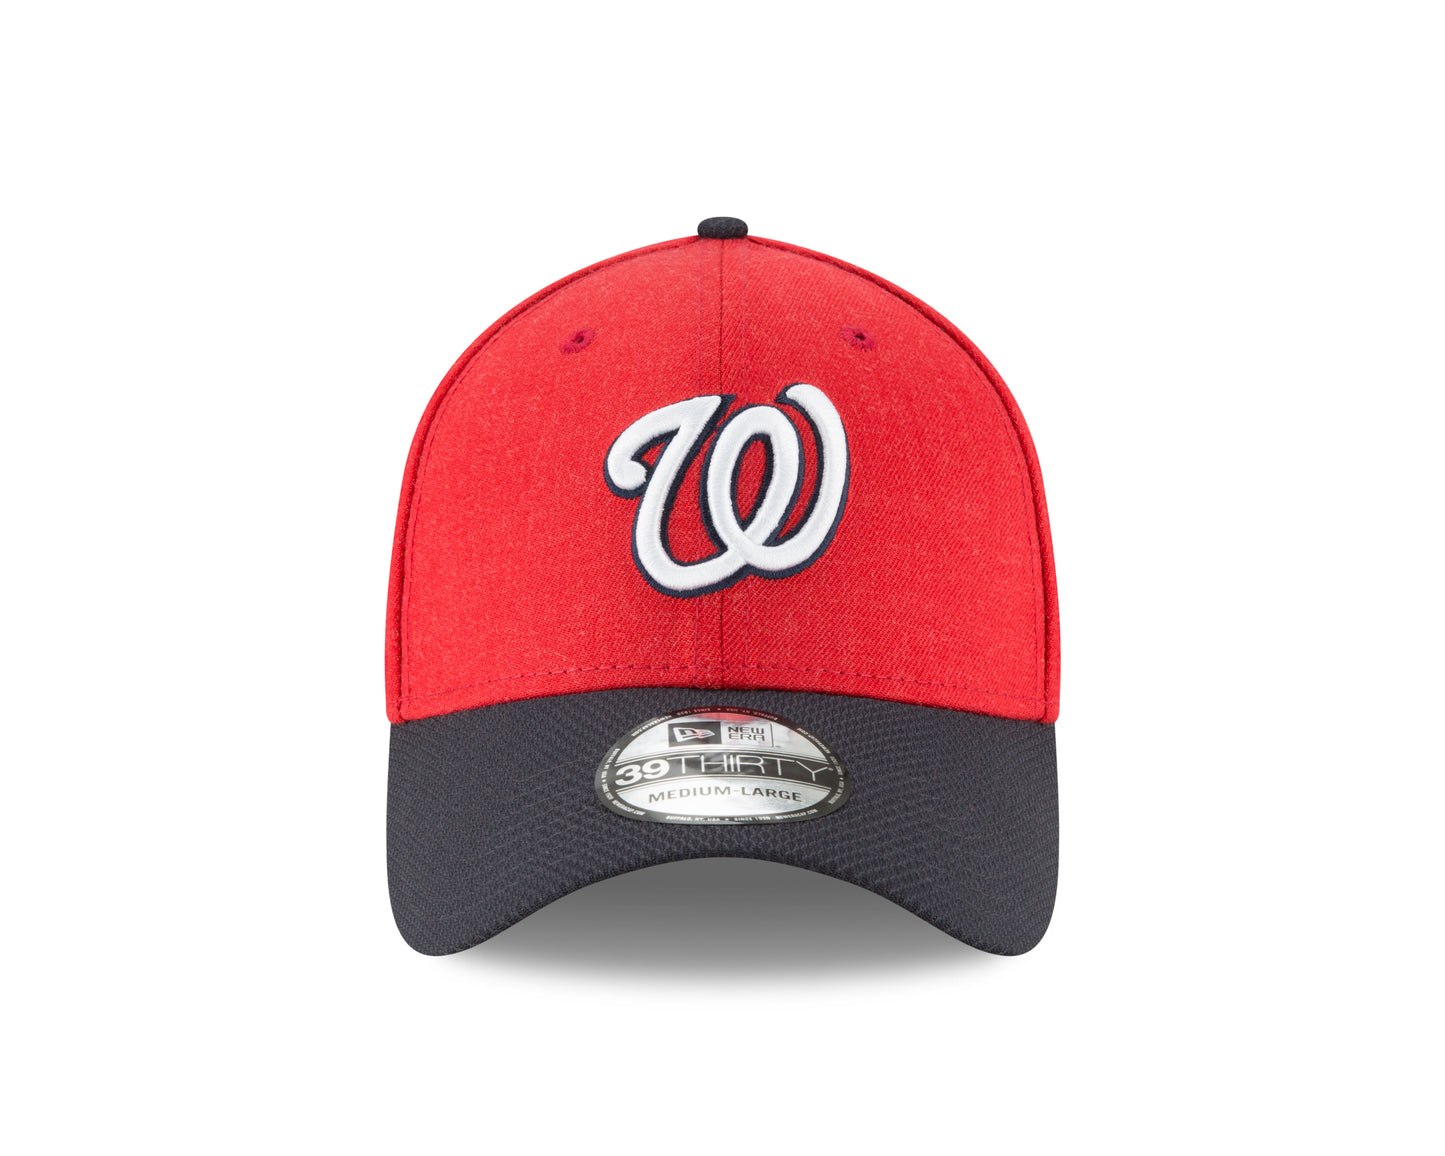 Washington Nationals New Era Heathered Change up Redux 39THIRTY Hat